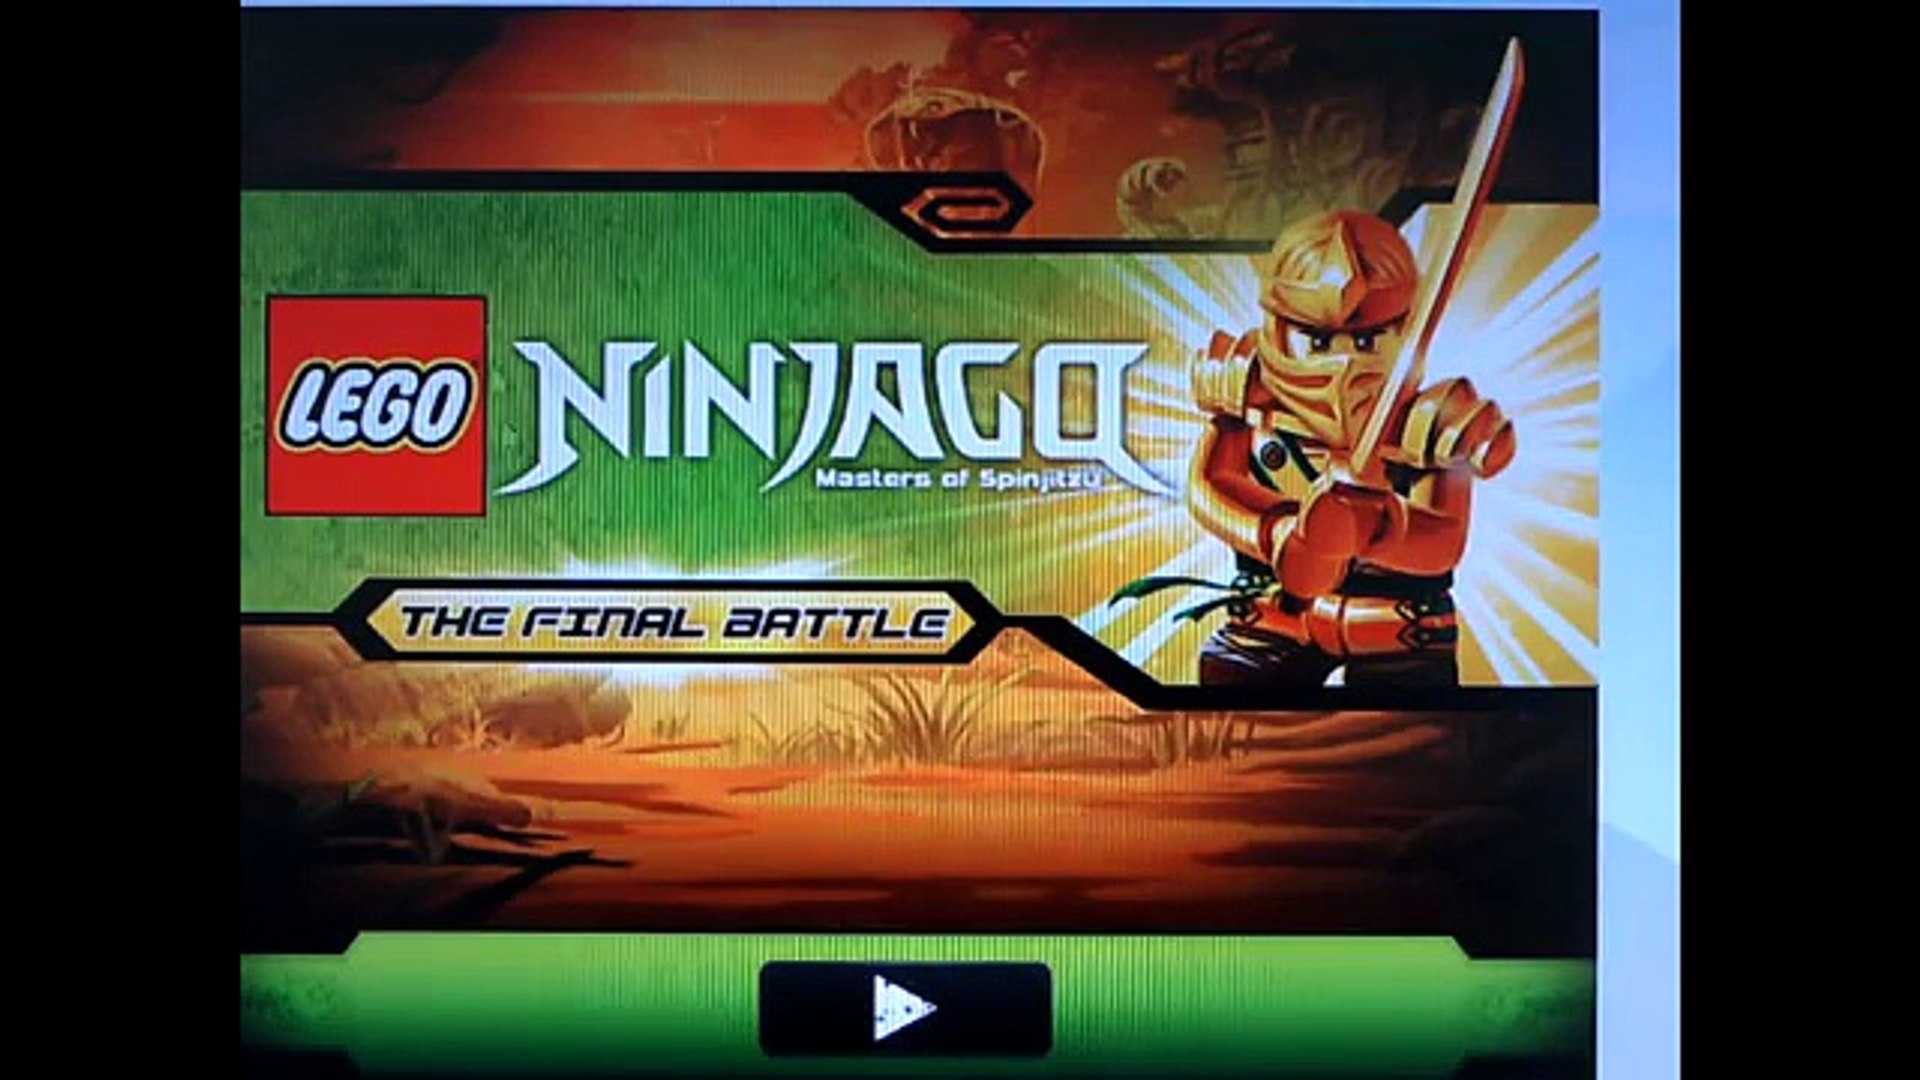 forståelse gå Har det dårligt Lego Ninjago Final Battle Game Review - Dailymotion Video